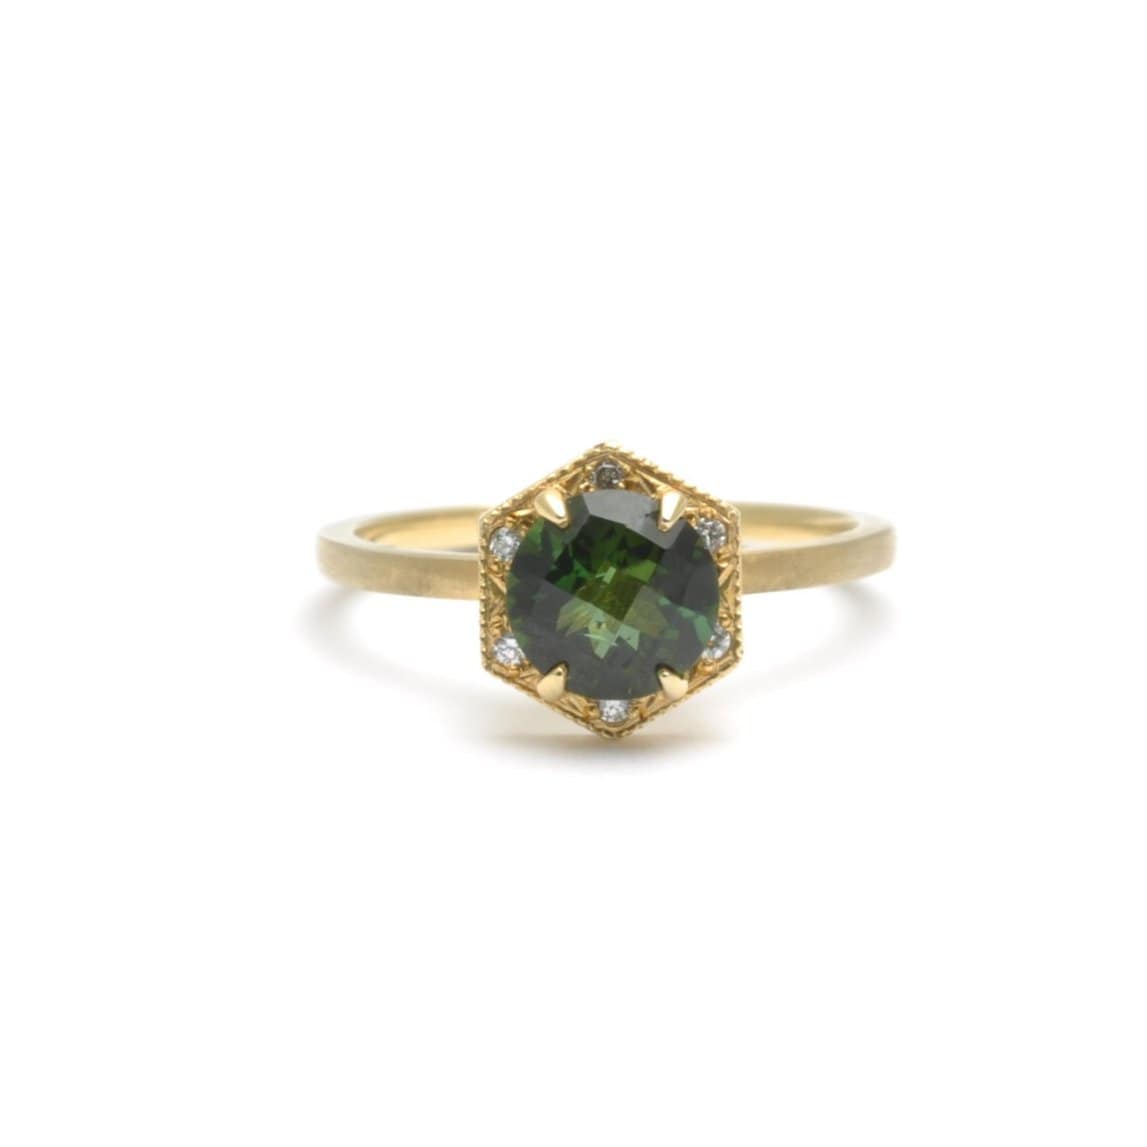 Dark Green Tourmaline with Diamonds Yellow Gold Ring